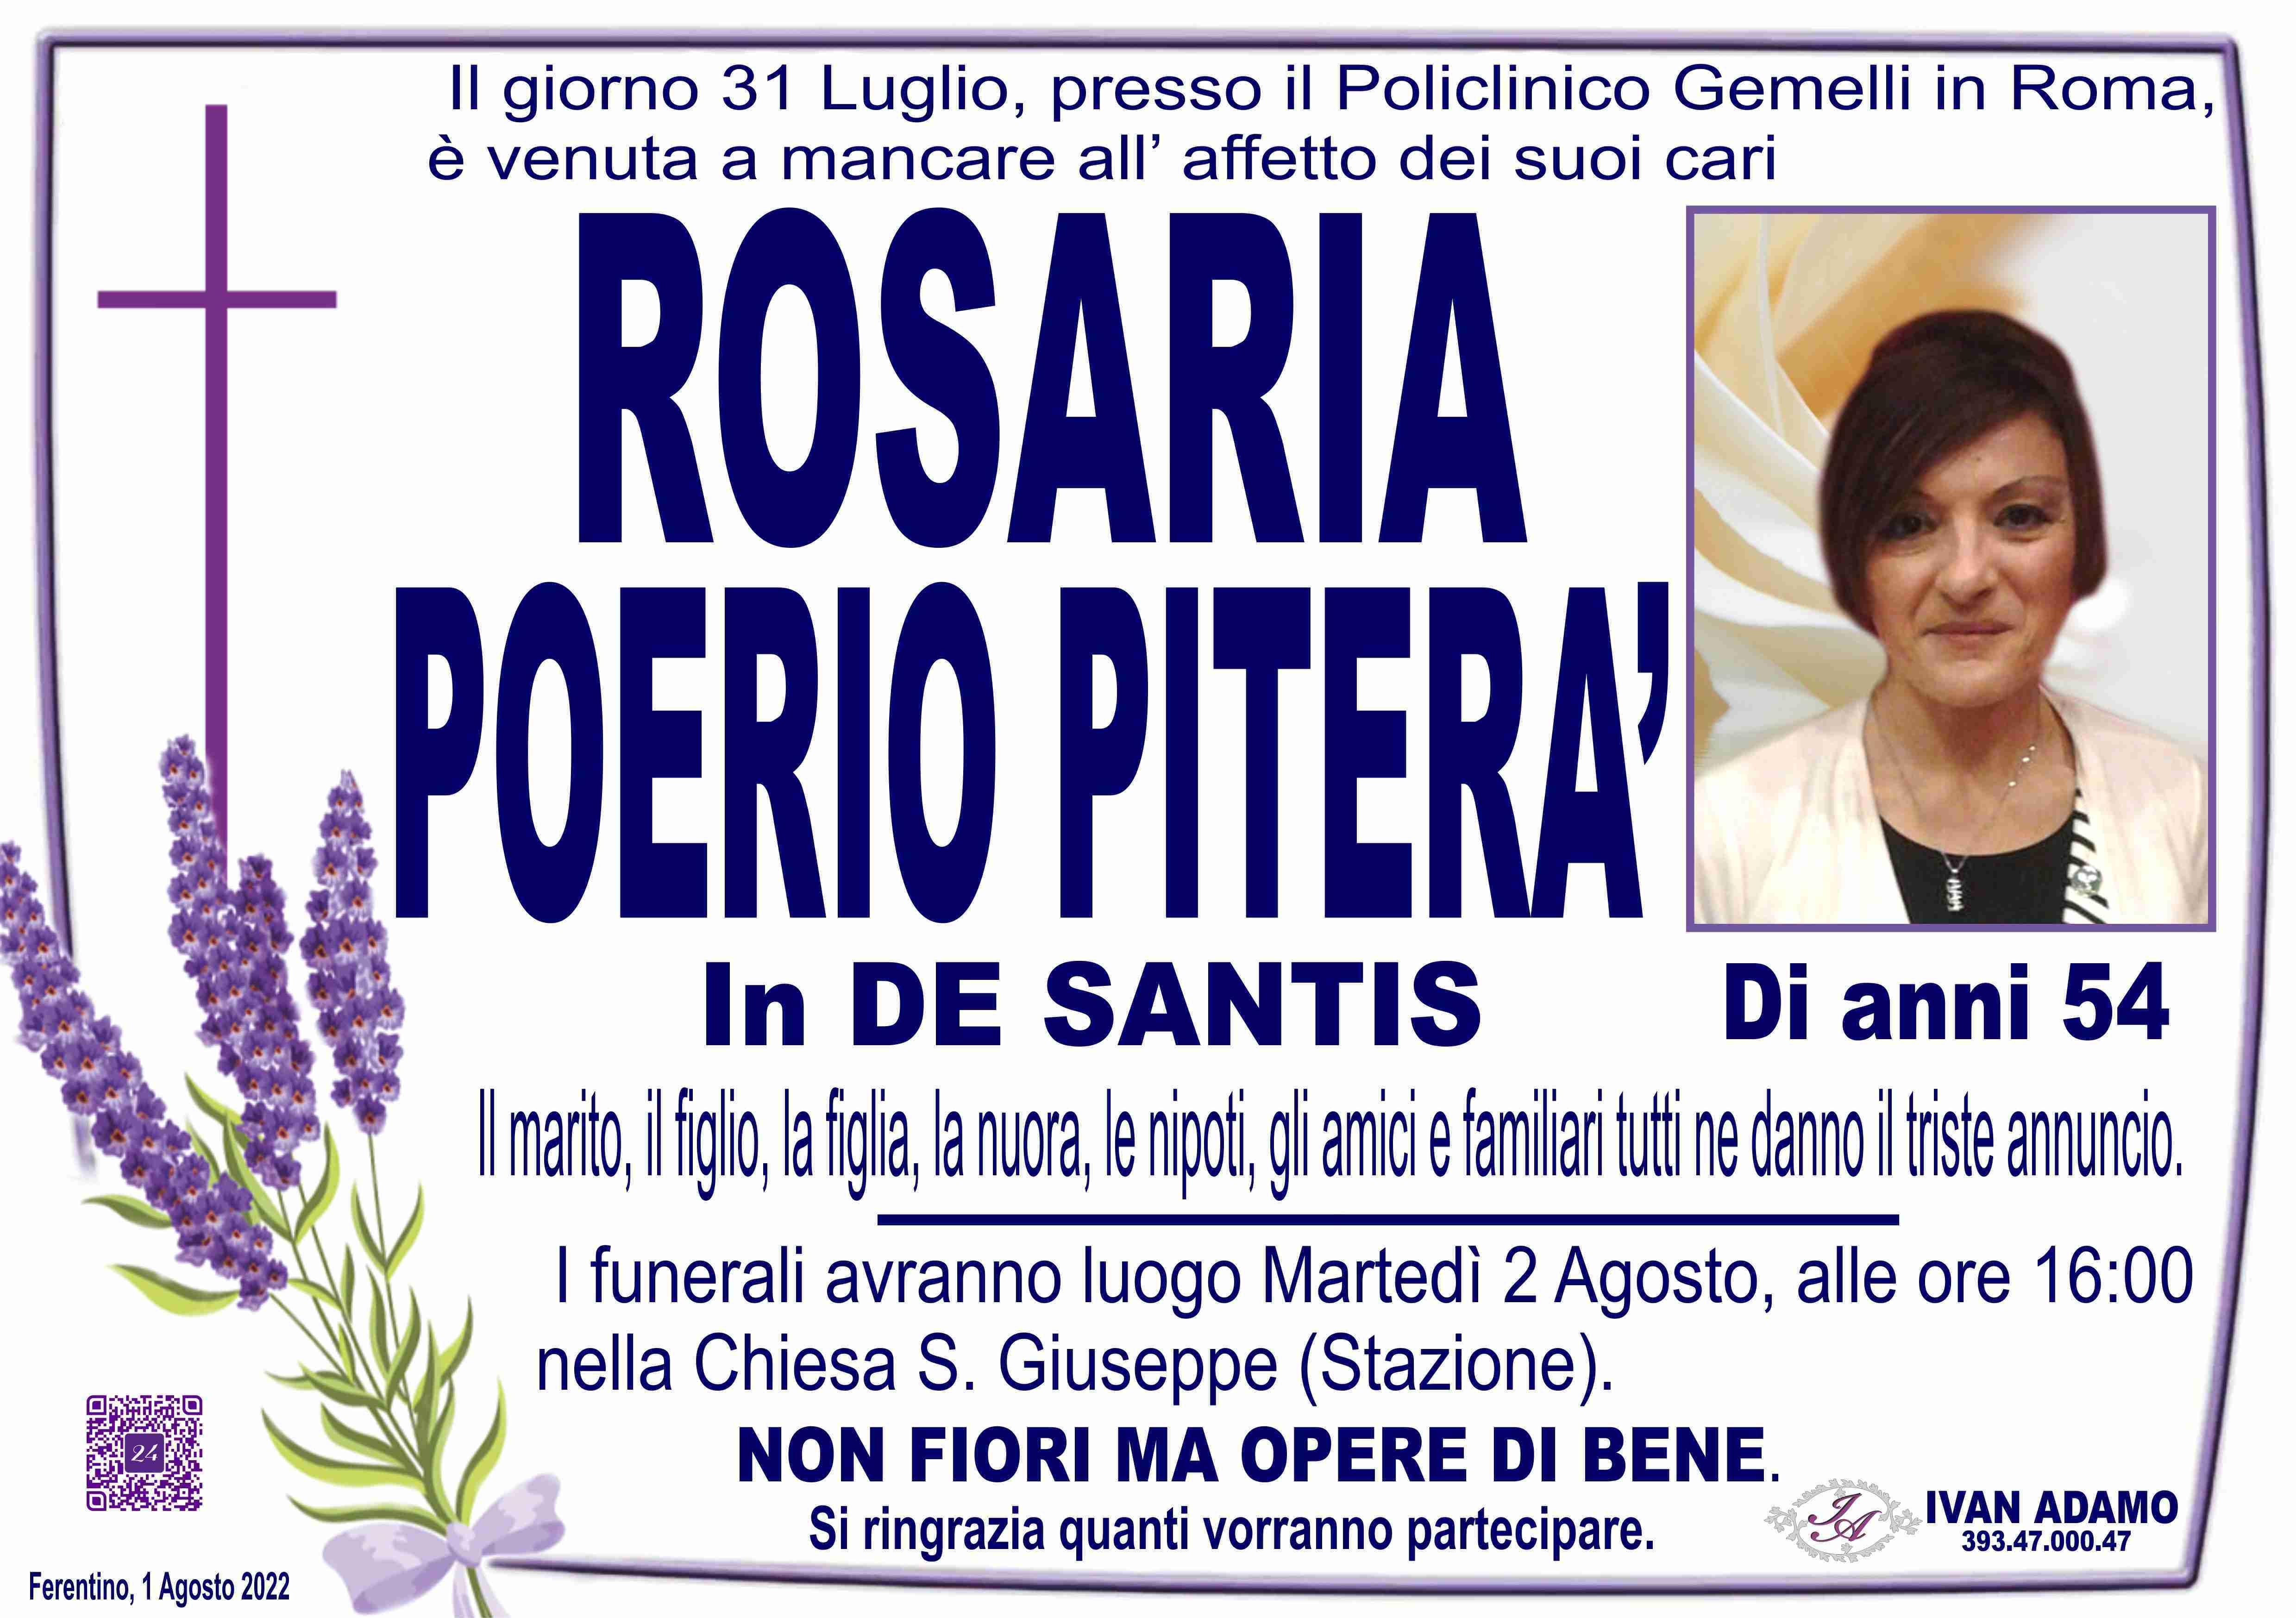 Rosaria Poerio Piterà